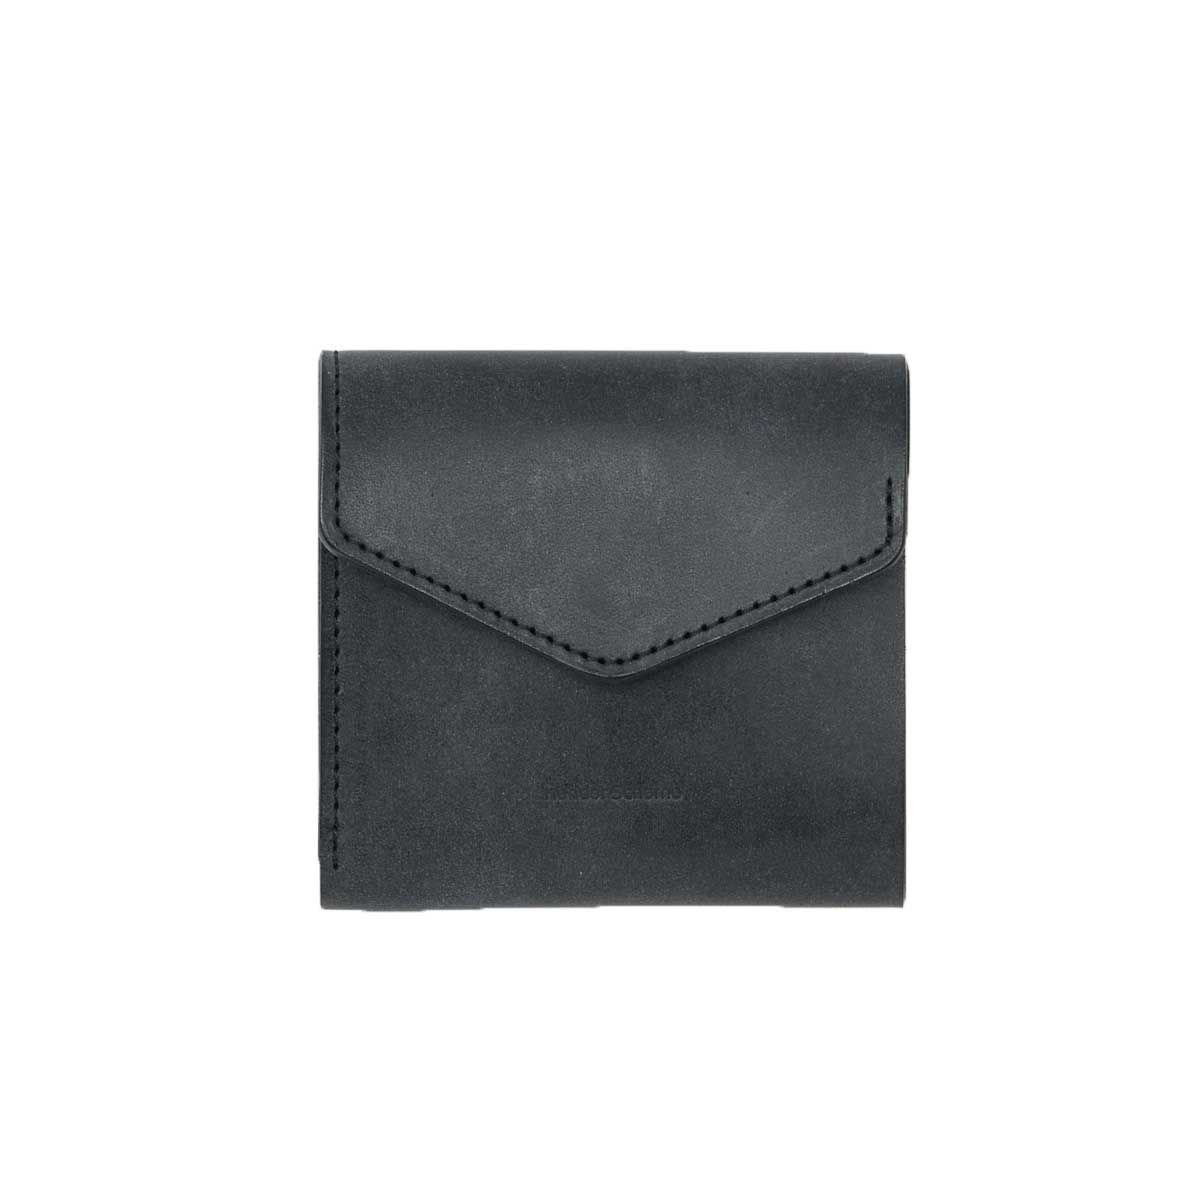 Hender Scheme / flap wallet Black